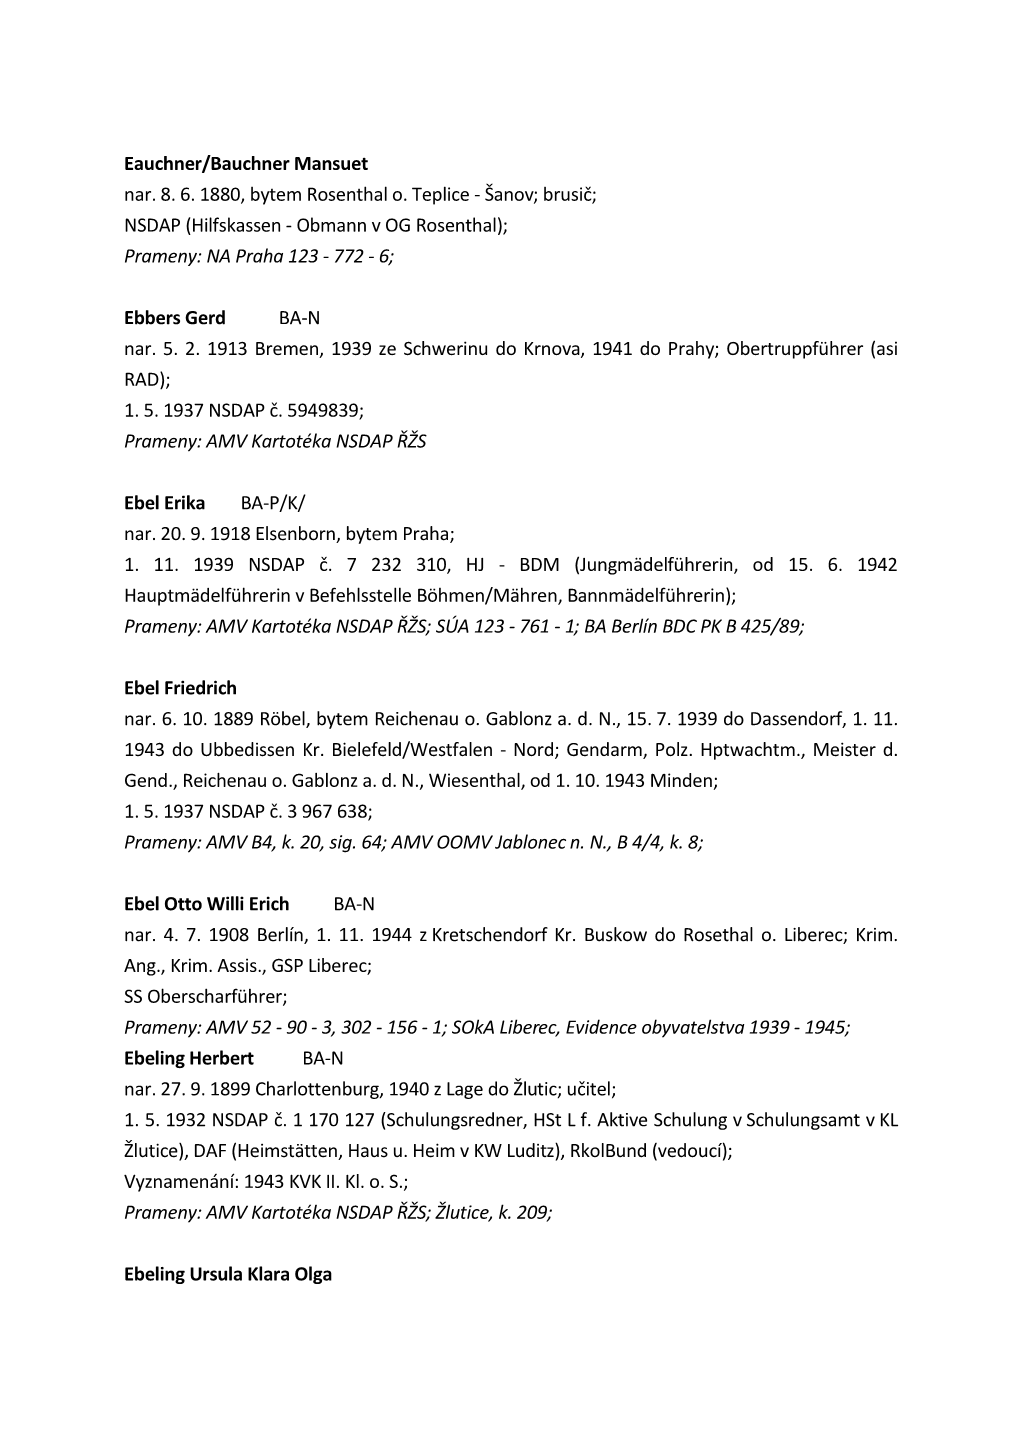 NSDAP (Hilfskassen - Obmann V OG Rosenthal); Prameny: NA Praha 123 - 772 - 6;